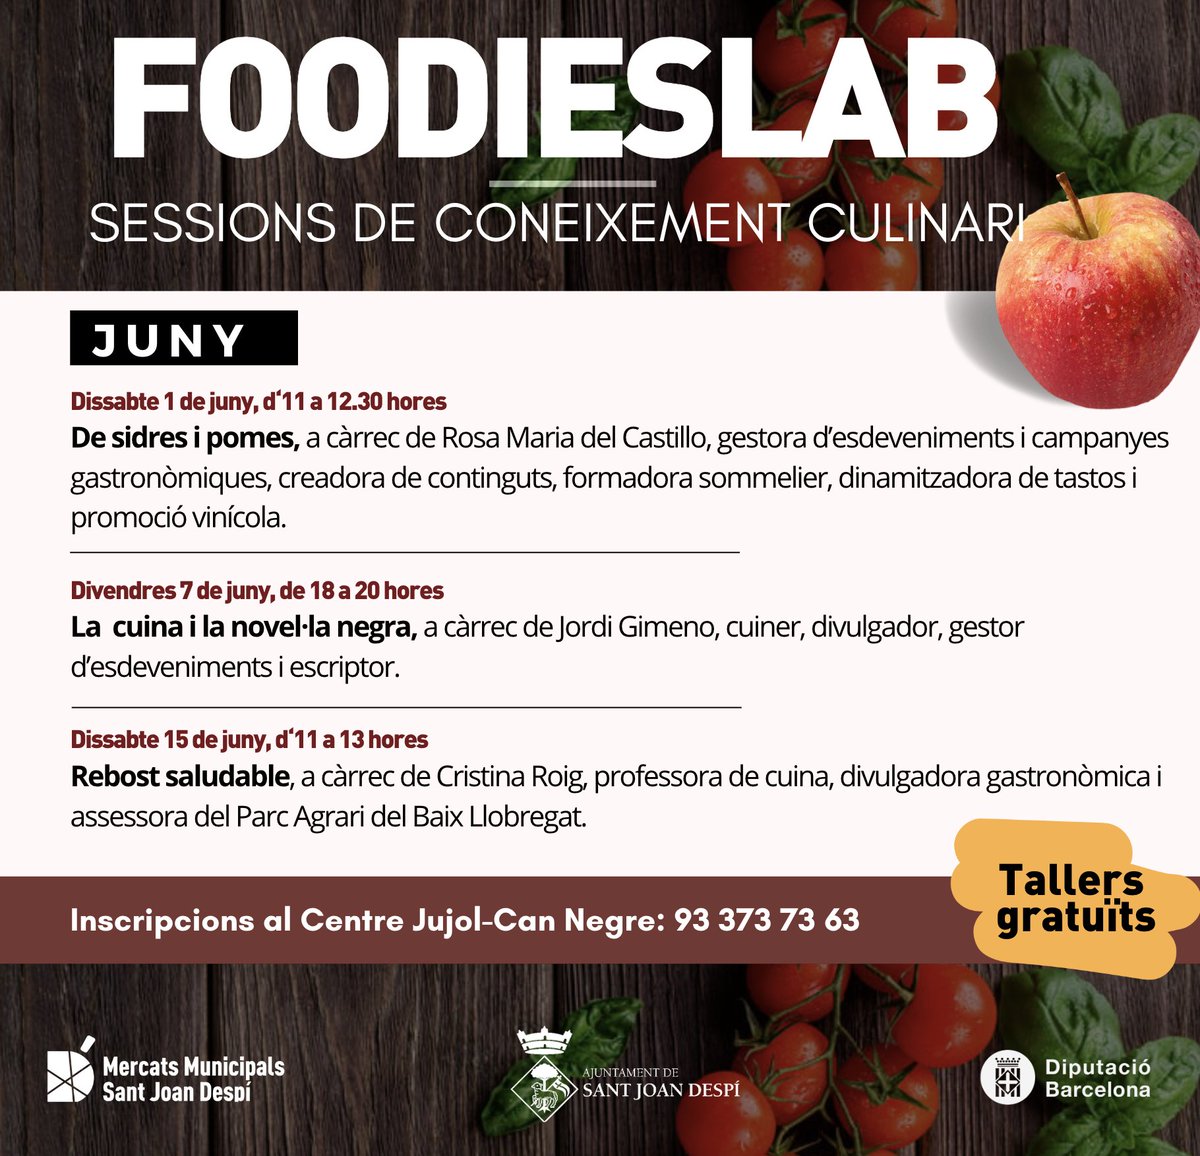 #AgendaSJD Al mes de juny seguim amb les sessions de coneixement culinari al Foodieslab! Parlarem de sidres i pomes, de cuina i novel·la negra i de com tenir un rebost saludable #santjoandespí 👉 Fes la inscripció al tel. 93 373 73 63